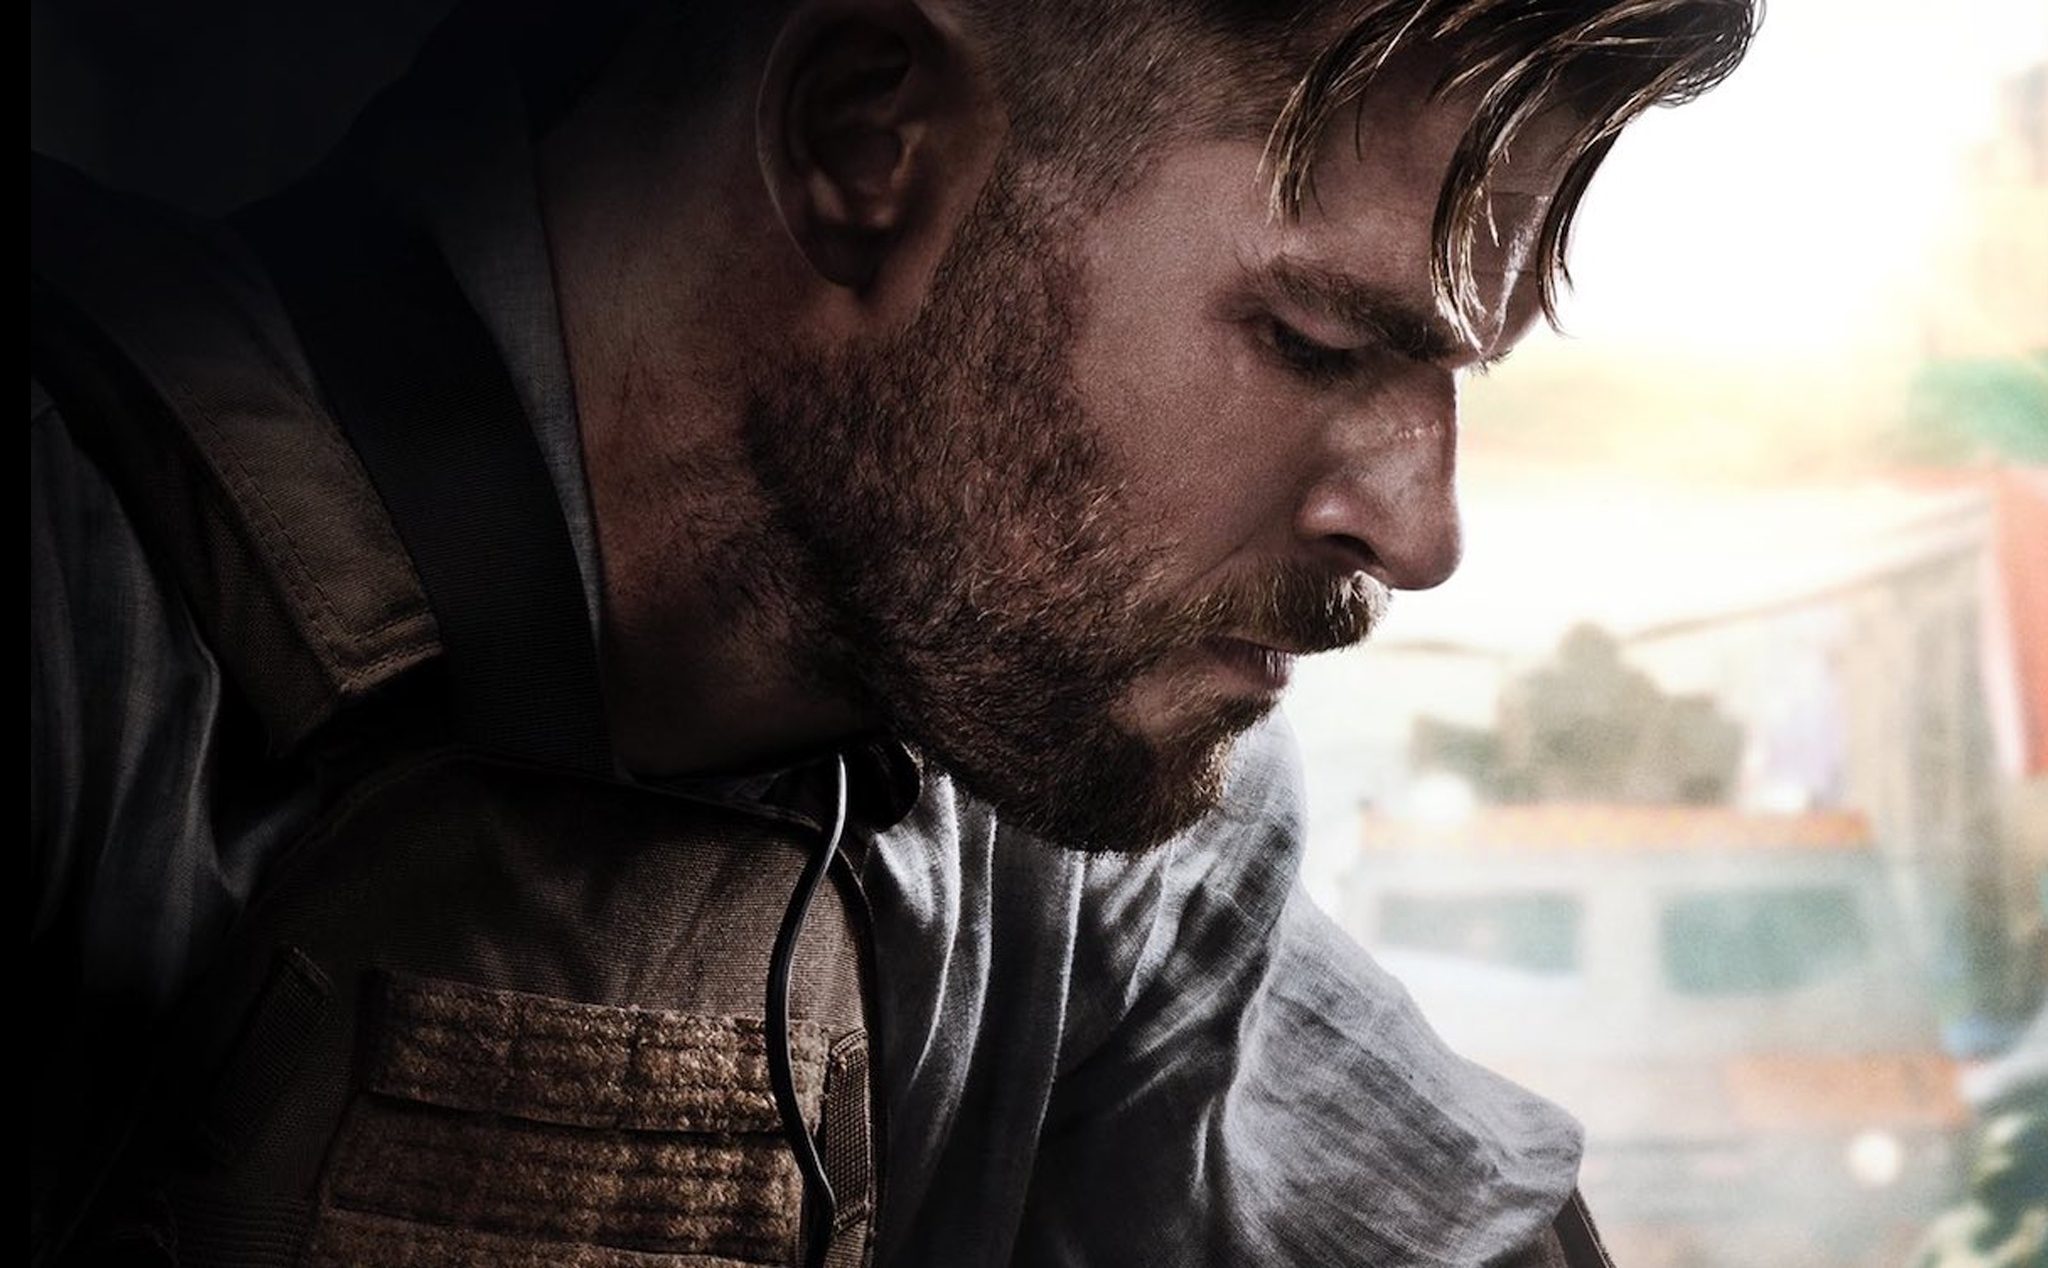 Hôm nay xem gì: Extraction - phim hành động gay cấn mới của Chris Hemsworth